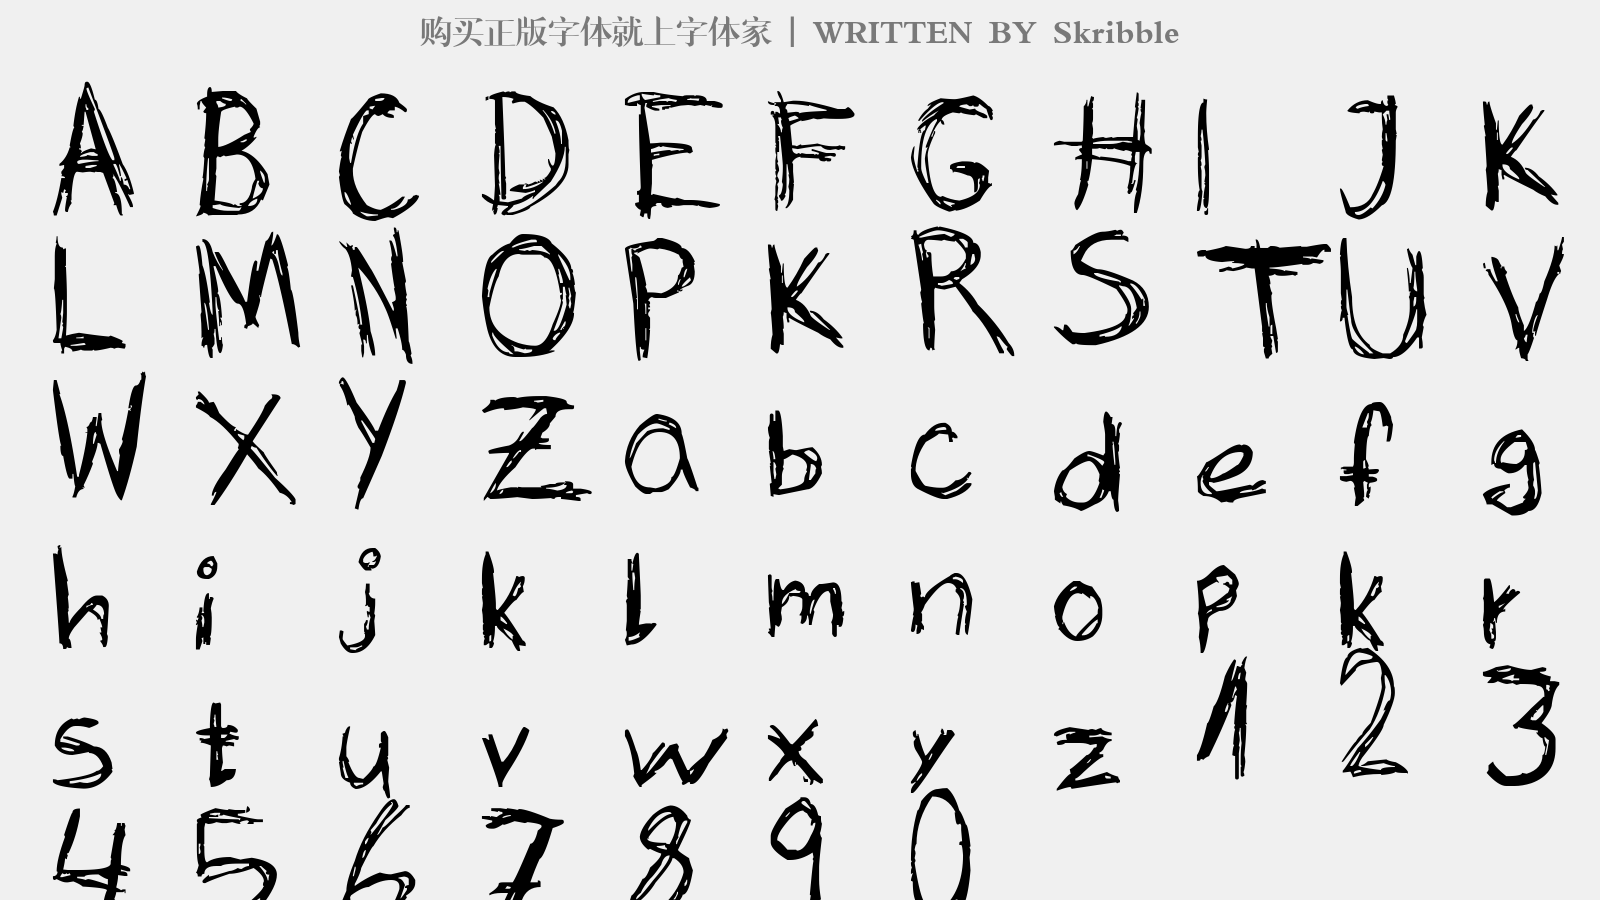 Skribble - 大写字母/小写字母/数字